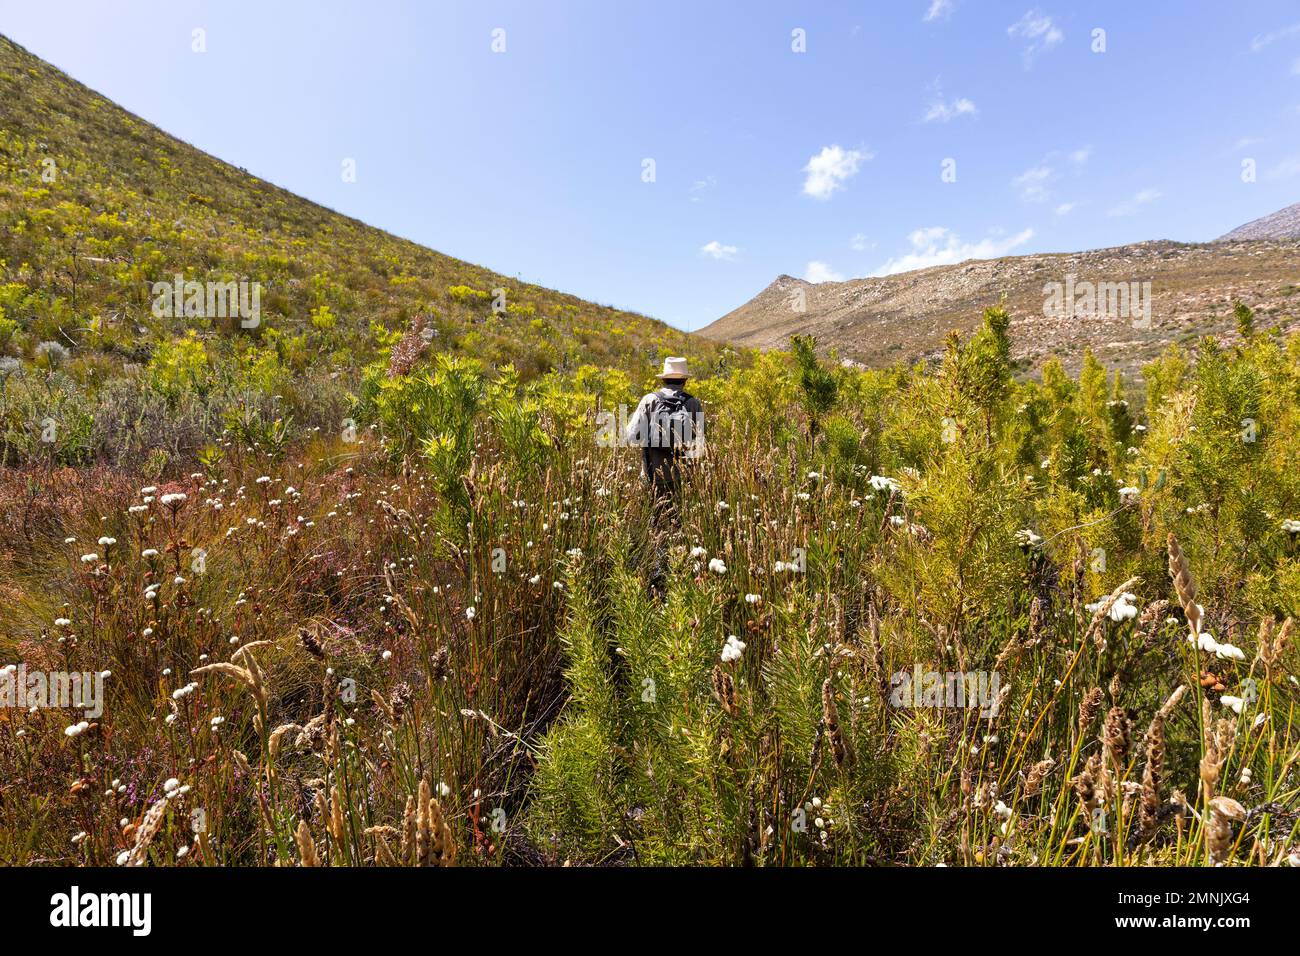 Südafrika, Barrydale, Senior männlicher Wanderer, der zwischen hohen Pflanzen spaziert Stockfoto